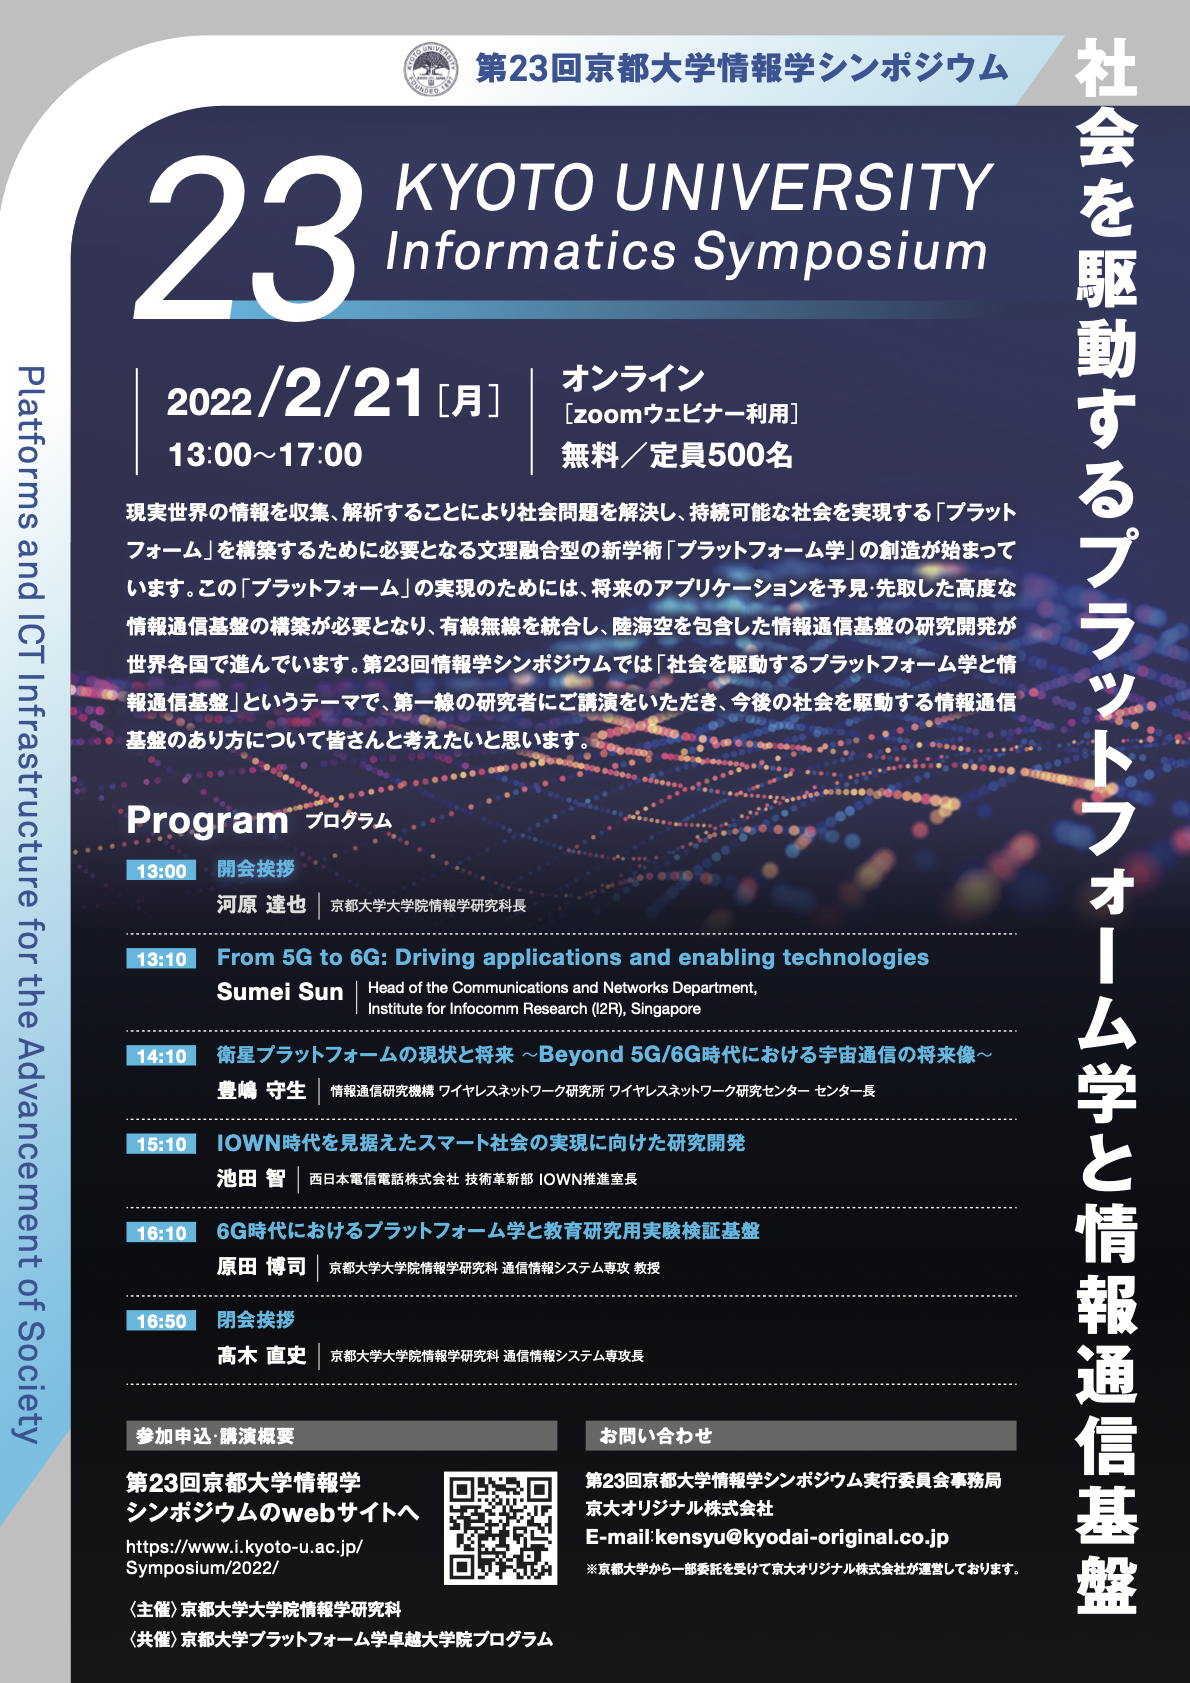 【2022年2月21日】第23回京都大学情報学シンポジウム（主催：情報学研究科）<br>「社会を駆動するプラットフォーム学と情報通信基盤」